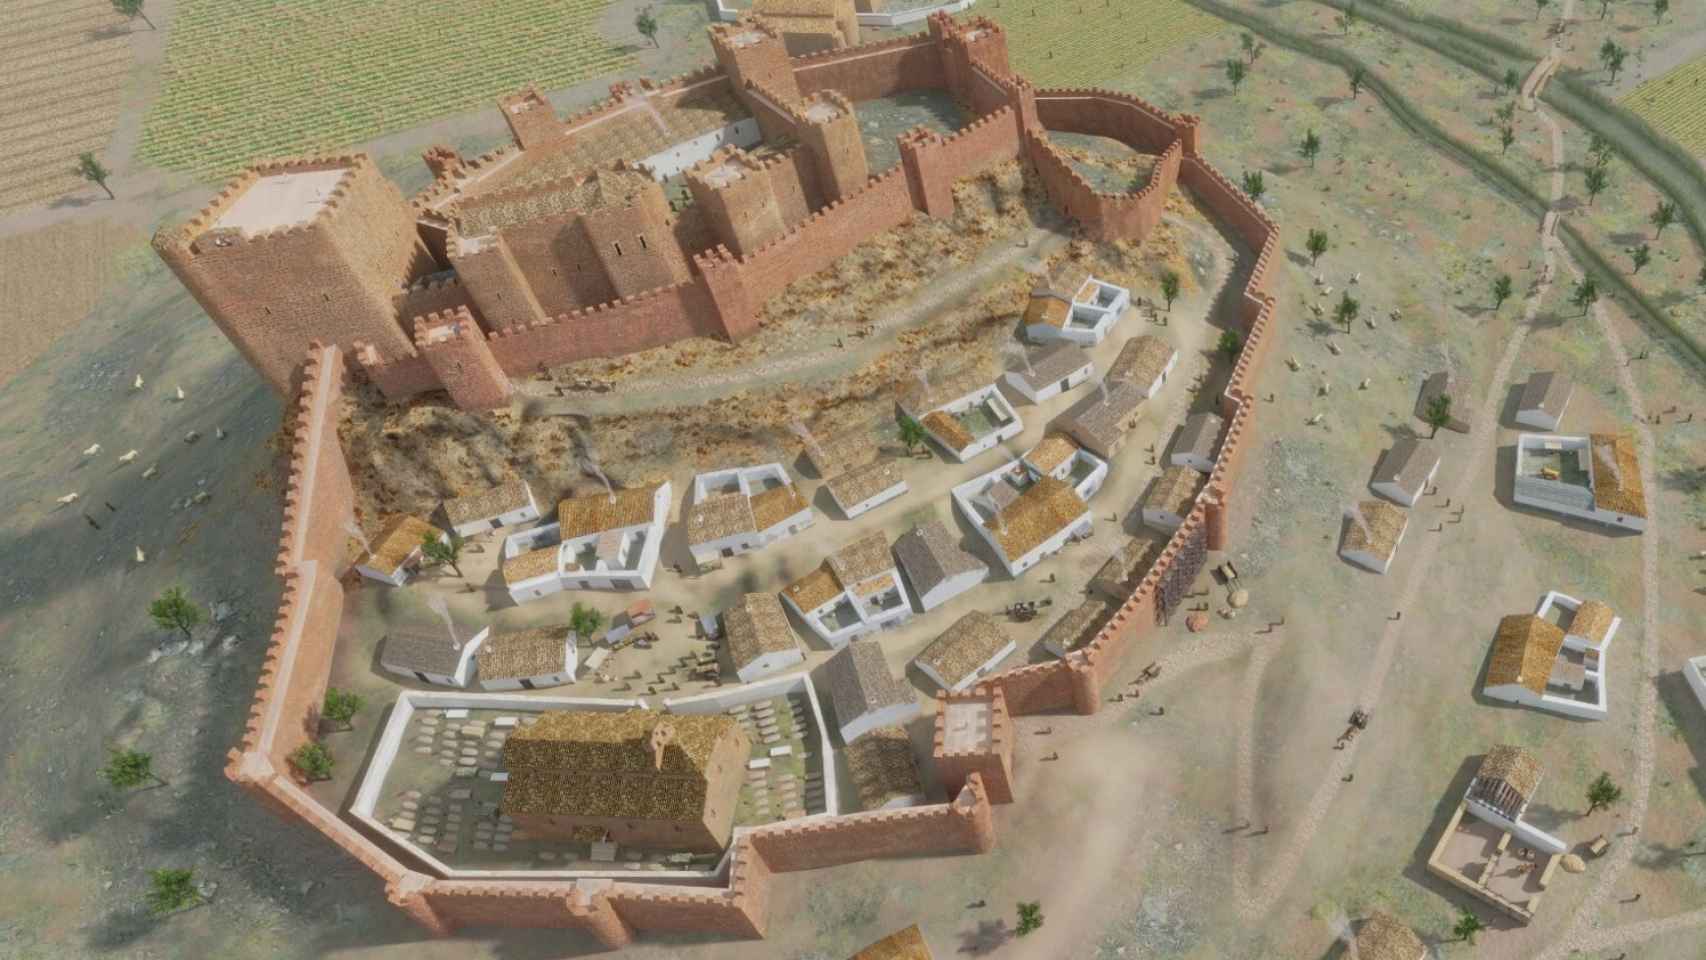 Reconstrucción virtual del castillo de La Estrella y la villa de Montiel en el siglo XIV.